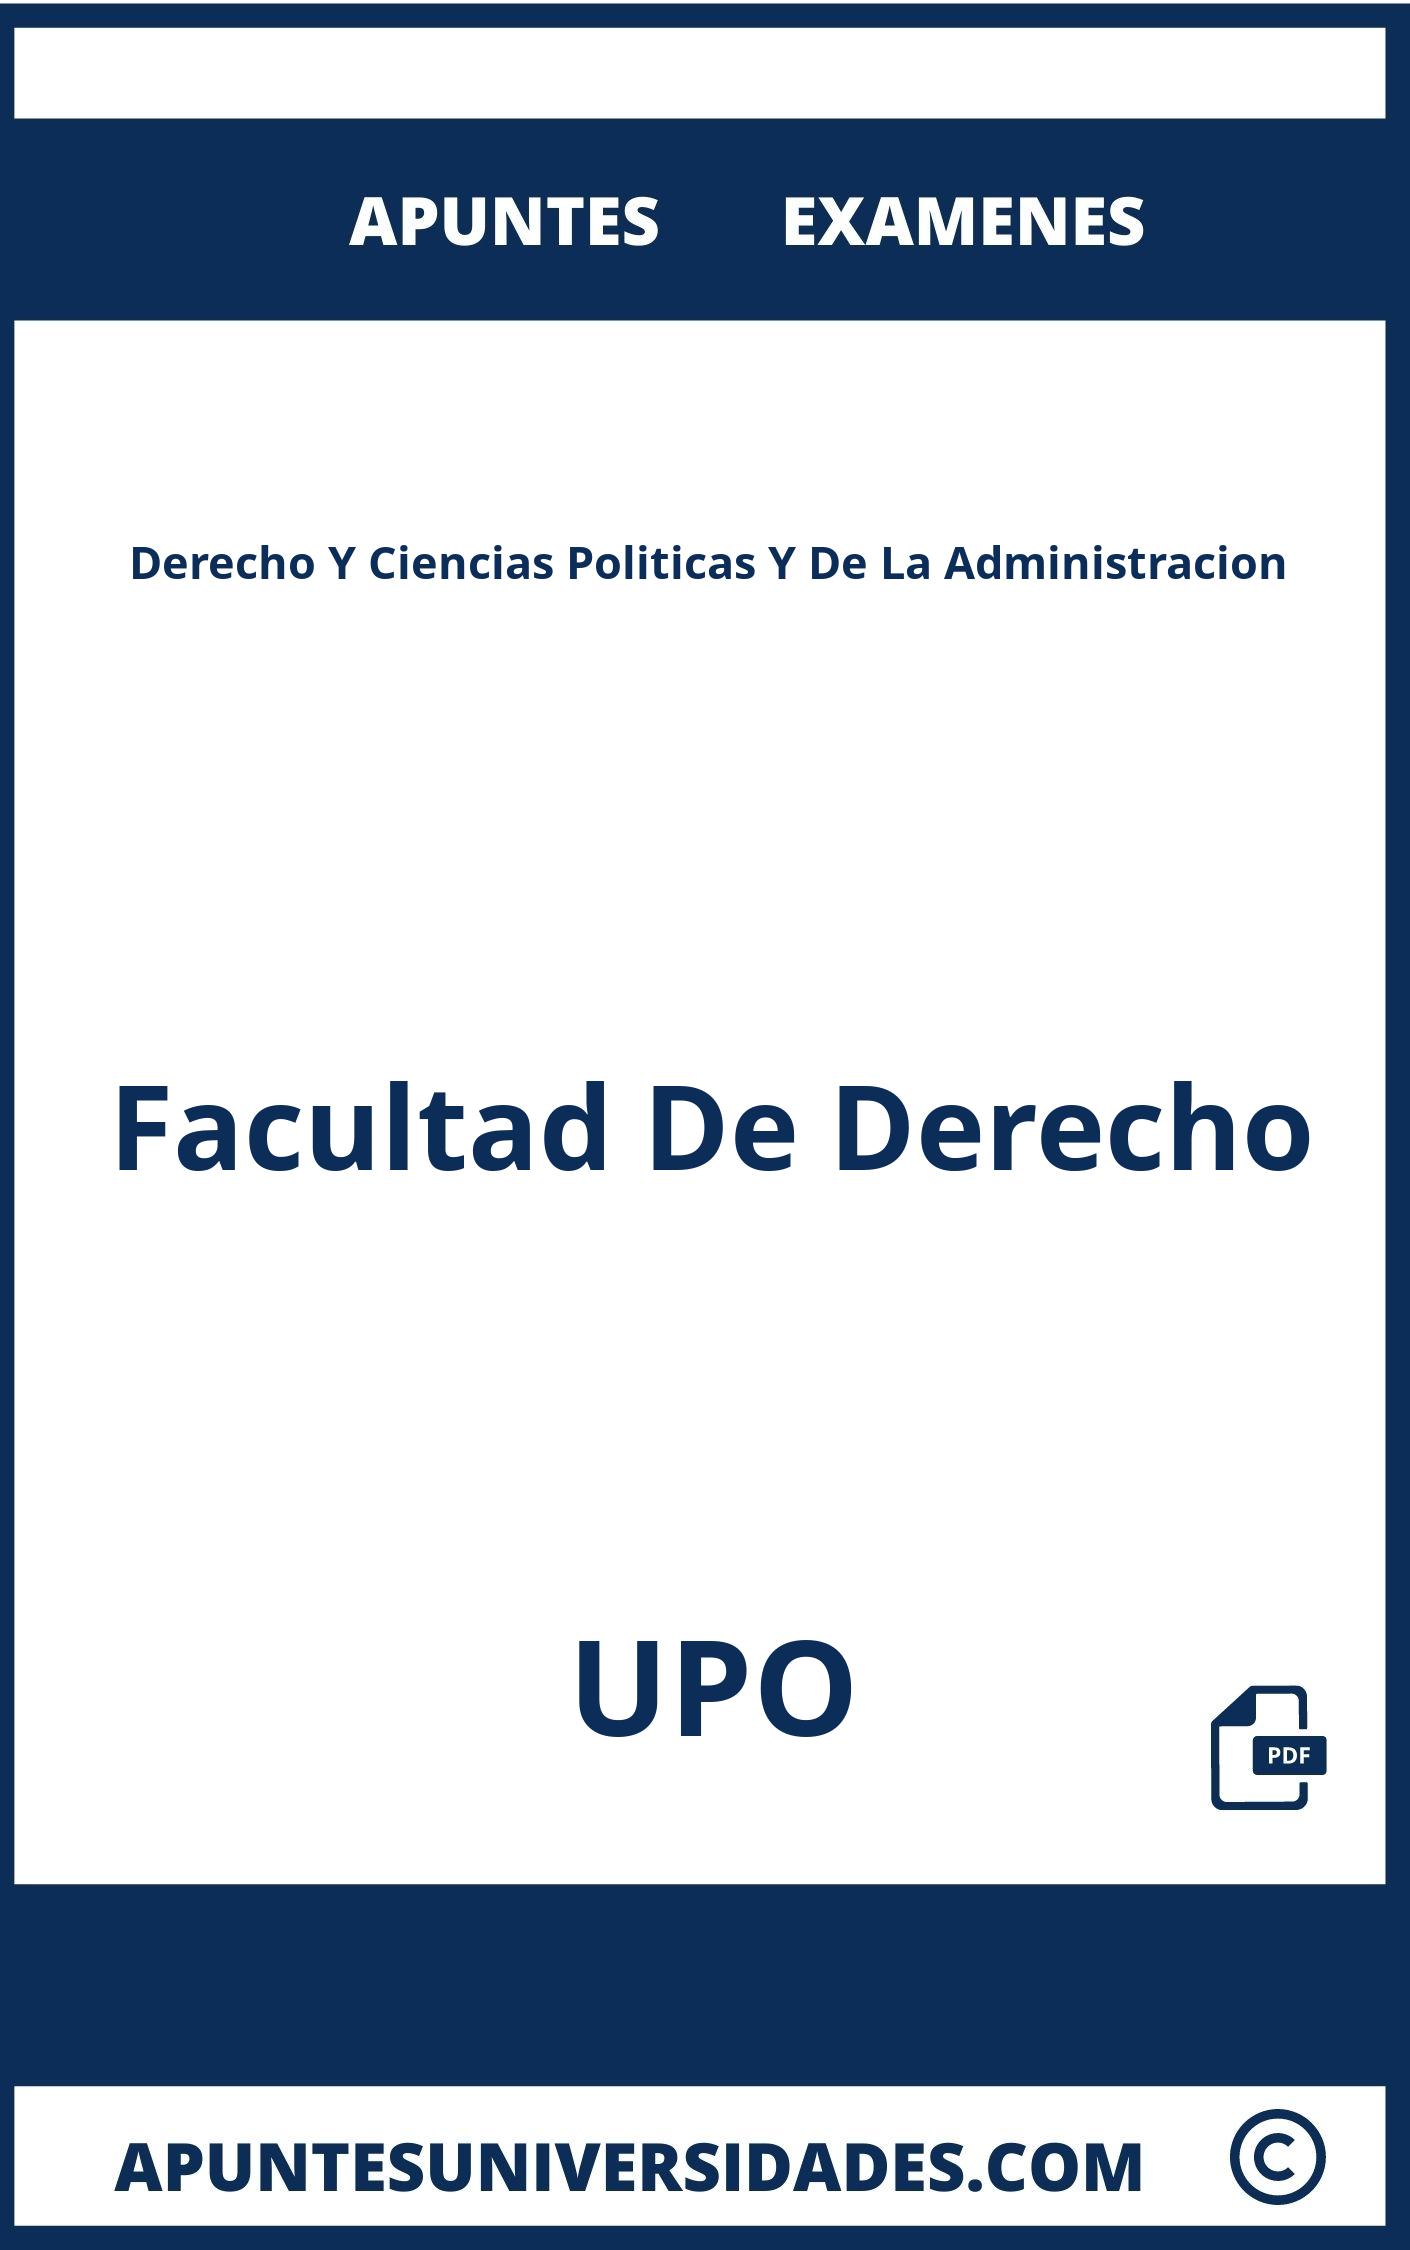 Derecho Y Ciencias Politicas Y De La Administracion UPO Examenes Apuntes